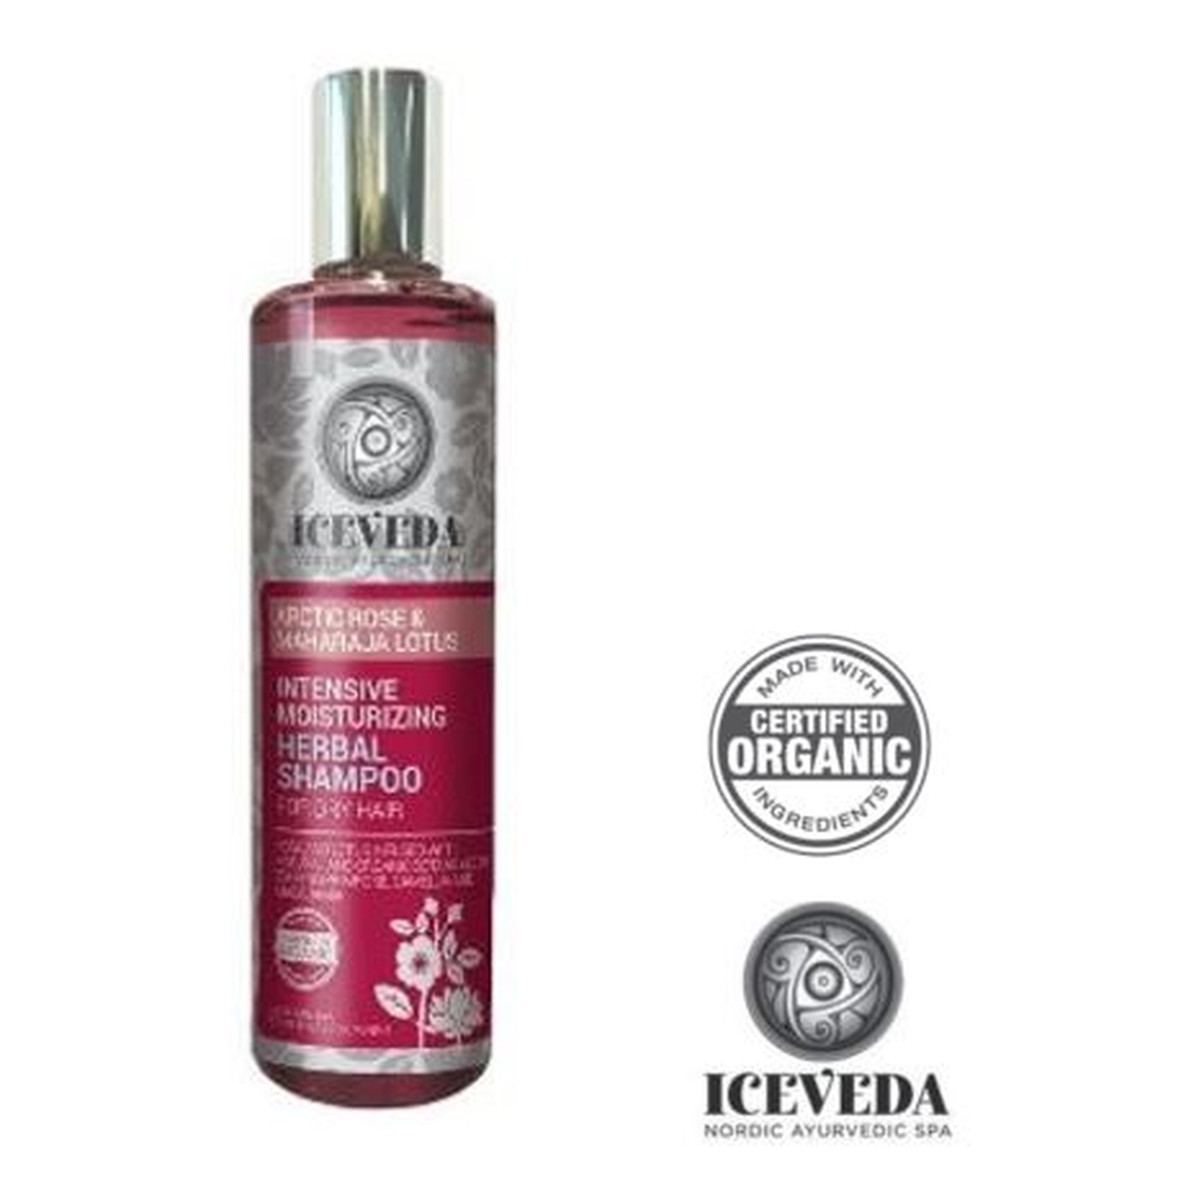 Iceveda Arktyczna róża & Lotos Intensywnie nawilżający ziołowy szampon do włosów suchych 280ml